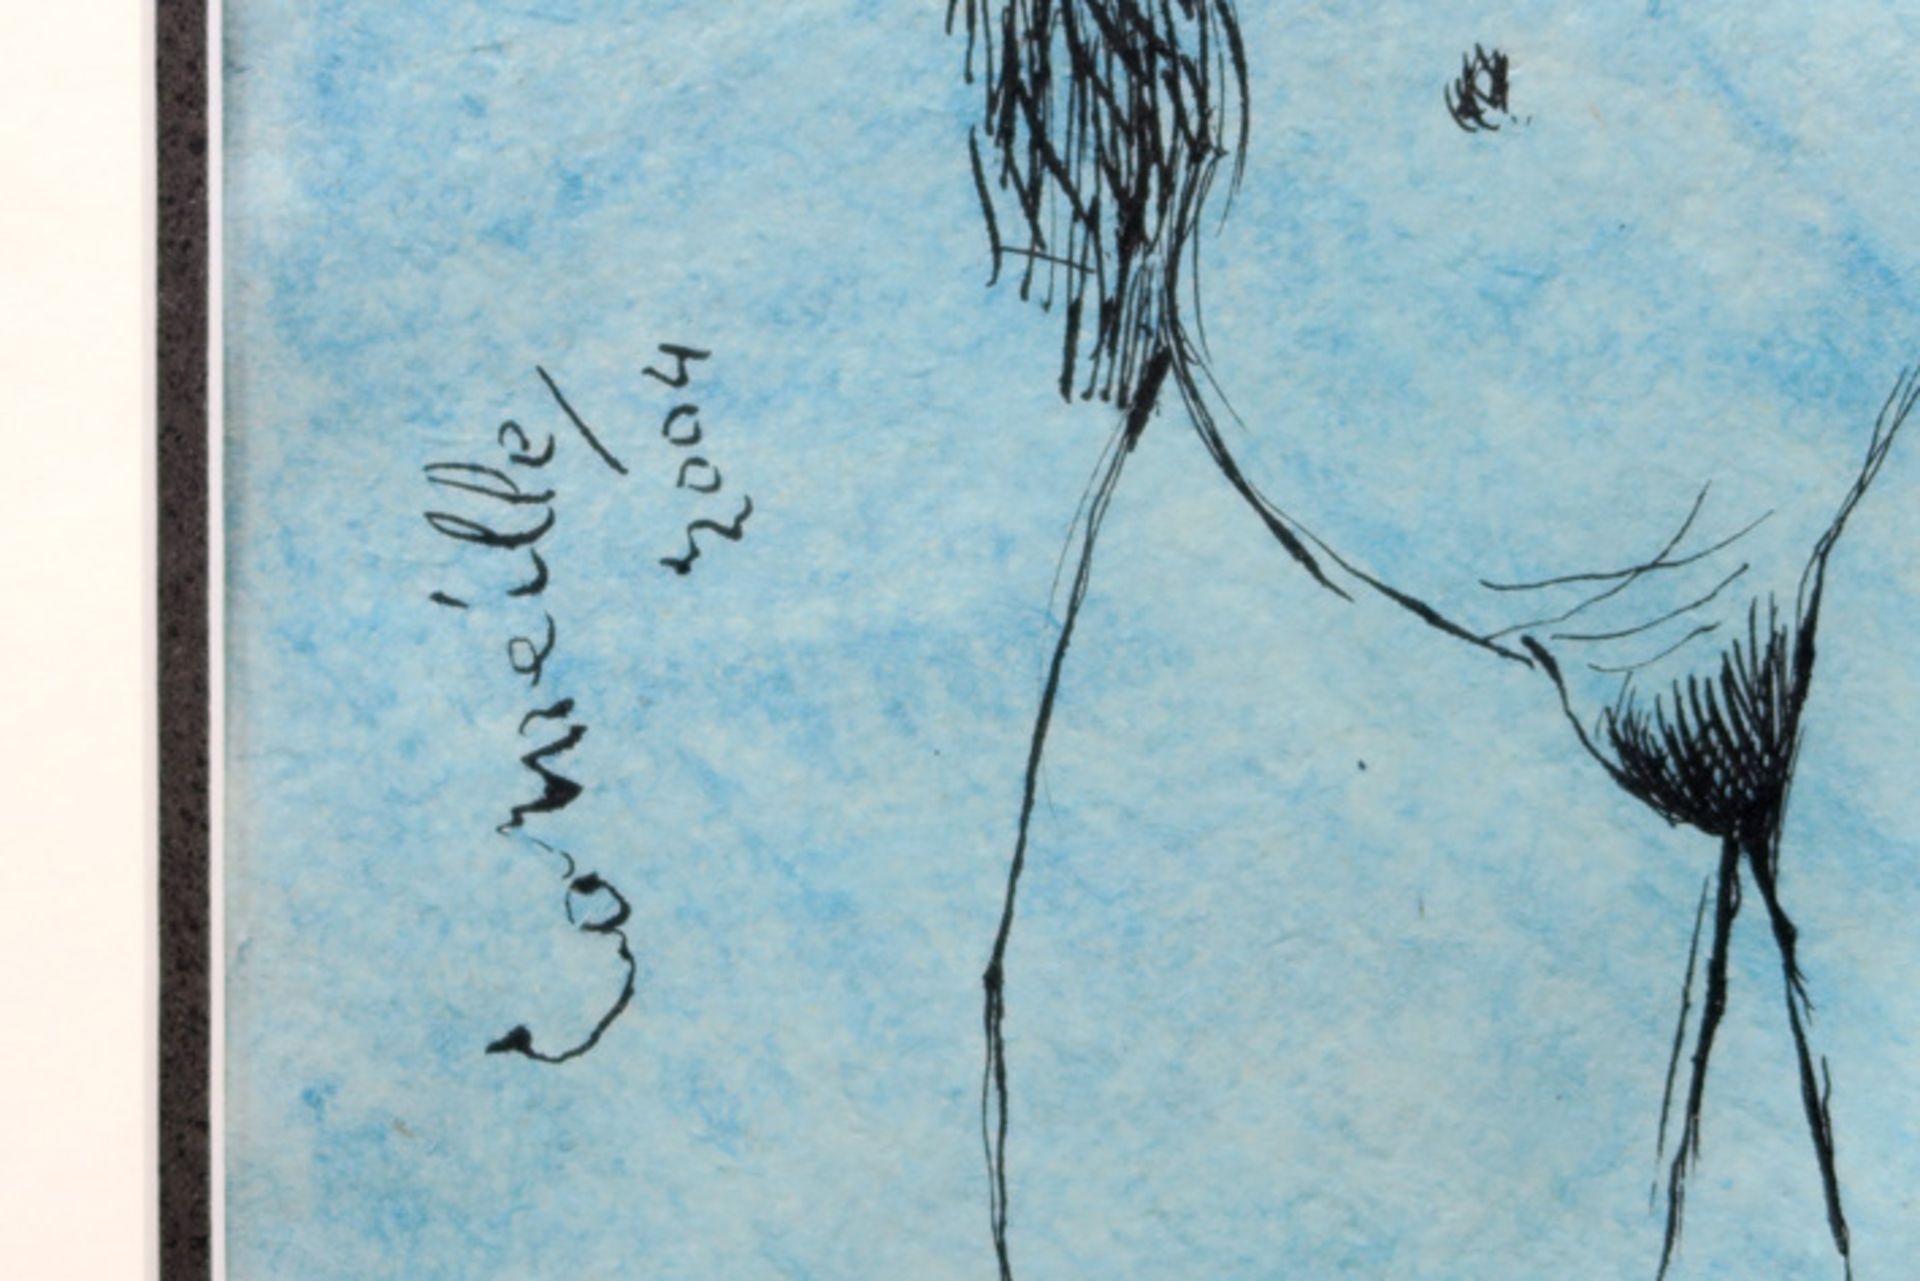 CORNEILLE (1922 - 2010) (1922 - 2010) tekening in inkt op Japans papier : "Blauw naakt" - 31 x 24 - Image 3 of 3